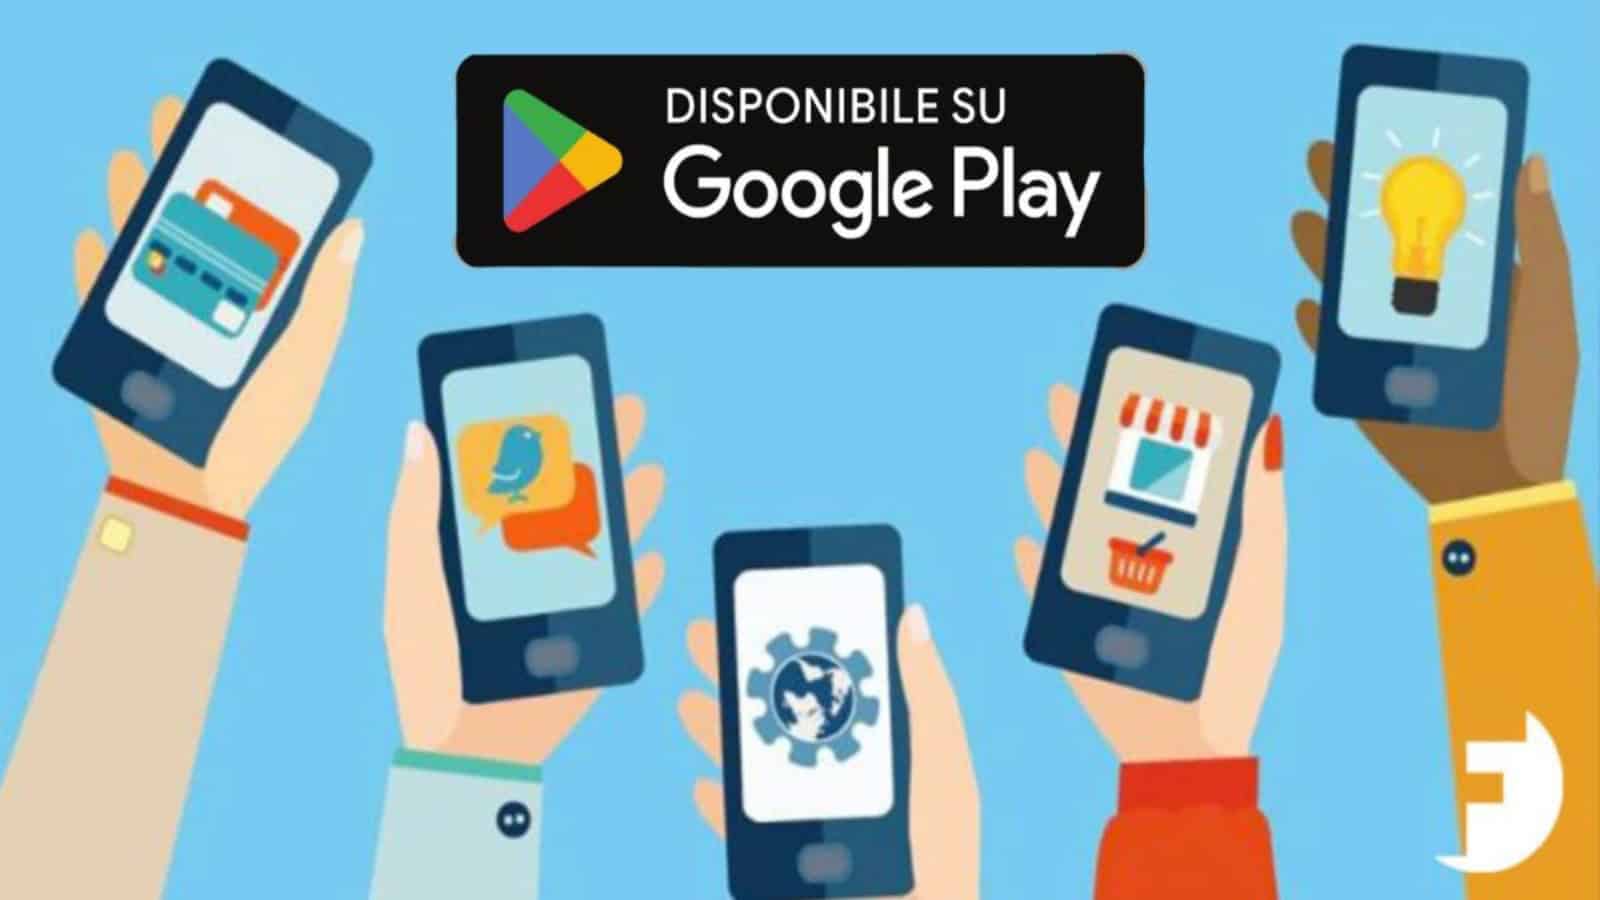 Play Store e regali: gli utenti Android possono scaricare gratis app a pagamento